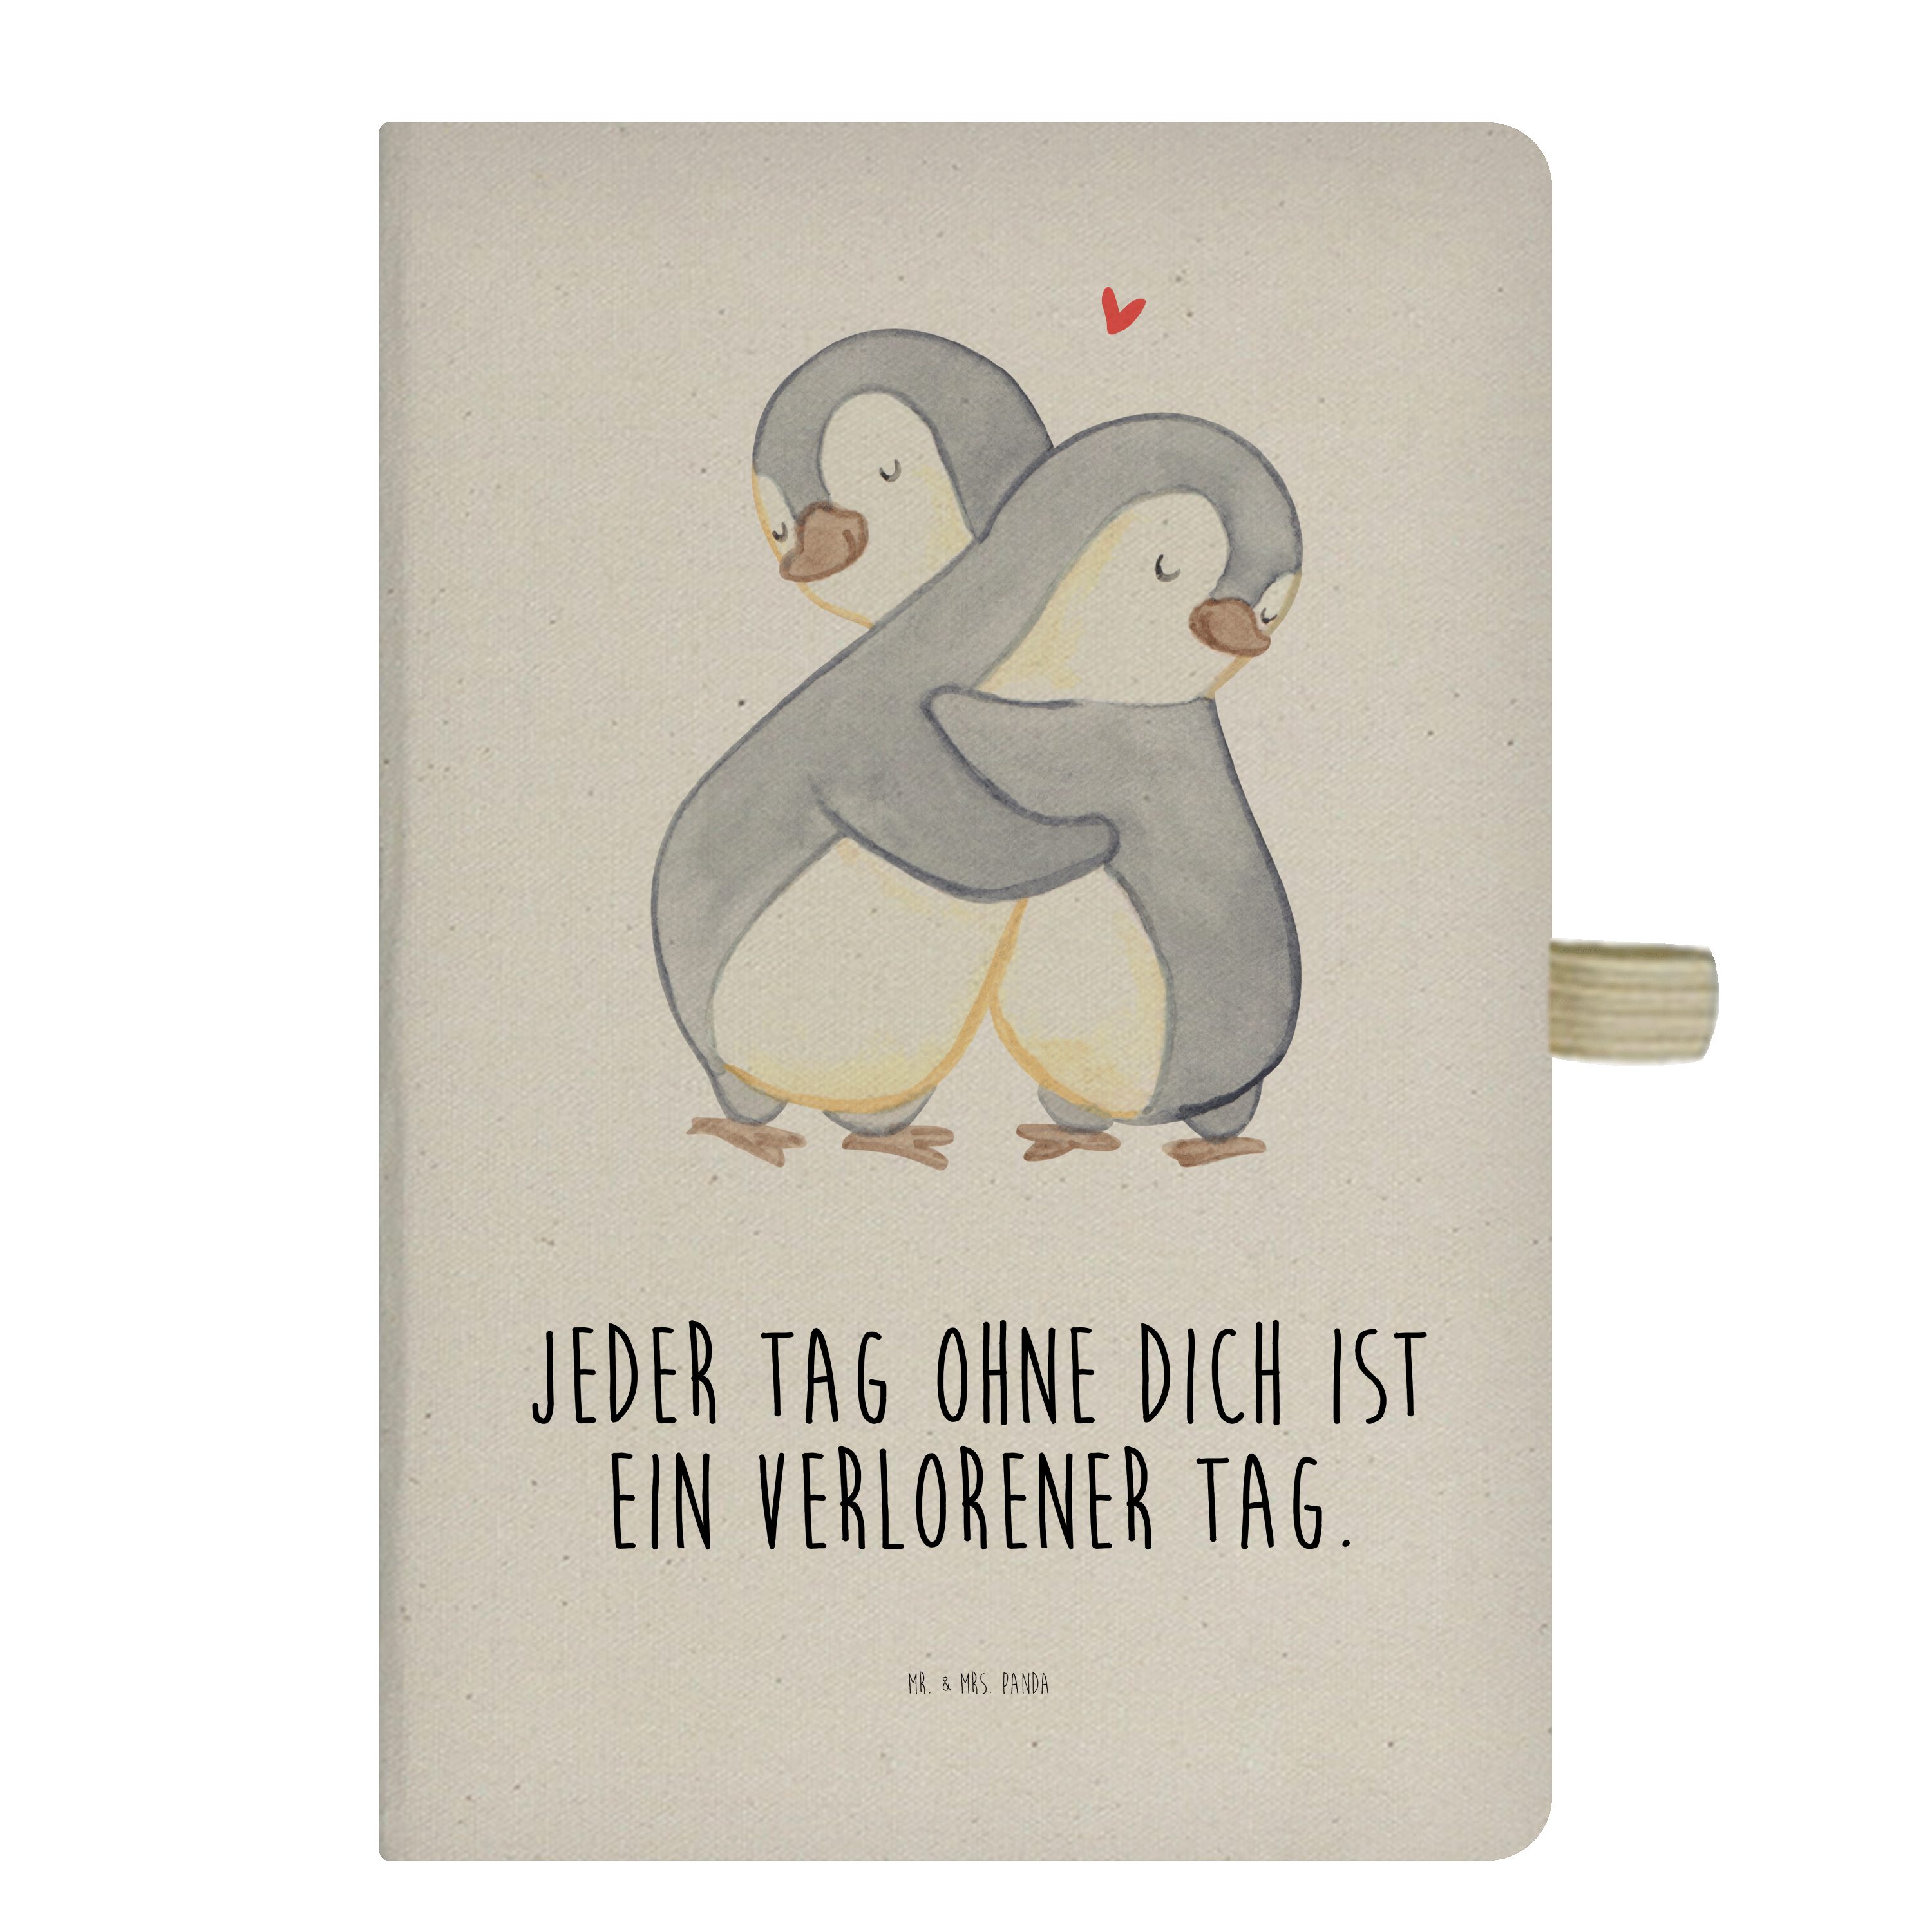 & Mrs. Panda Geschenk, Mrs. & - Mr. Transparent Panda Liebesgeschenk, - Pinguine Kuscheln Heiratsan Notizbuch Mr.